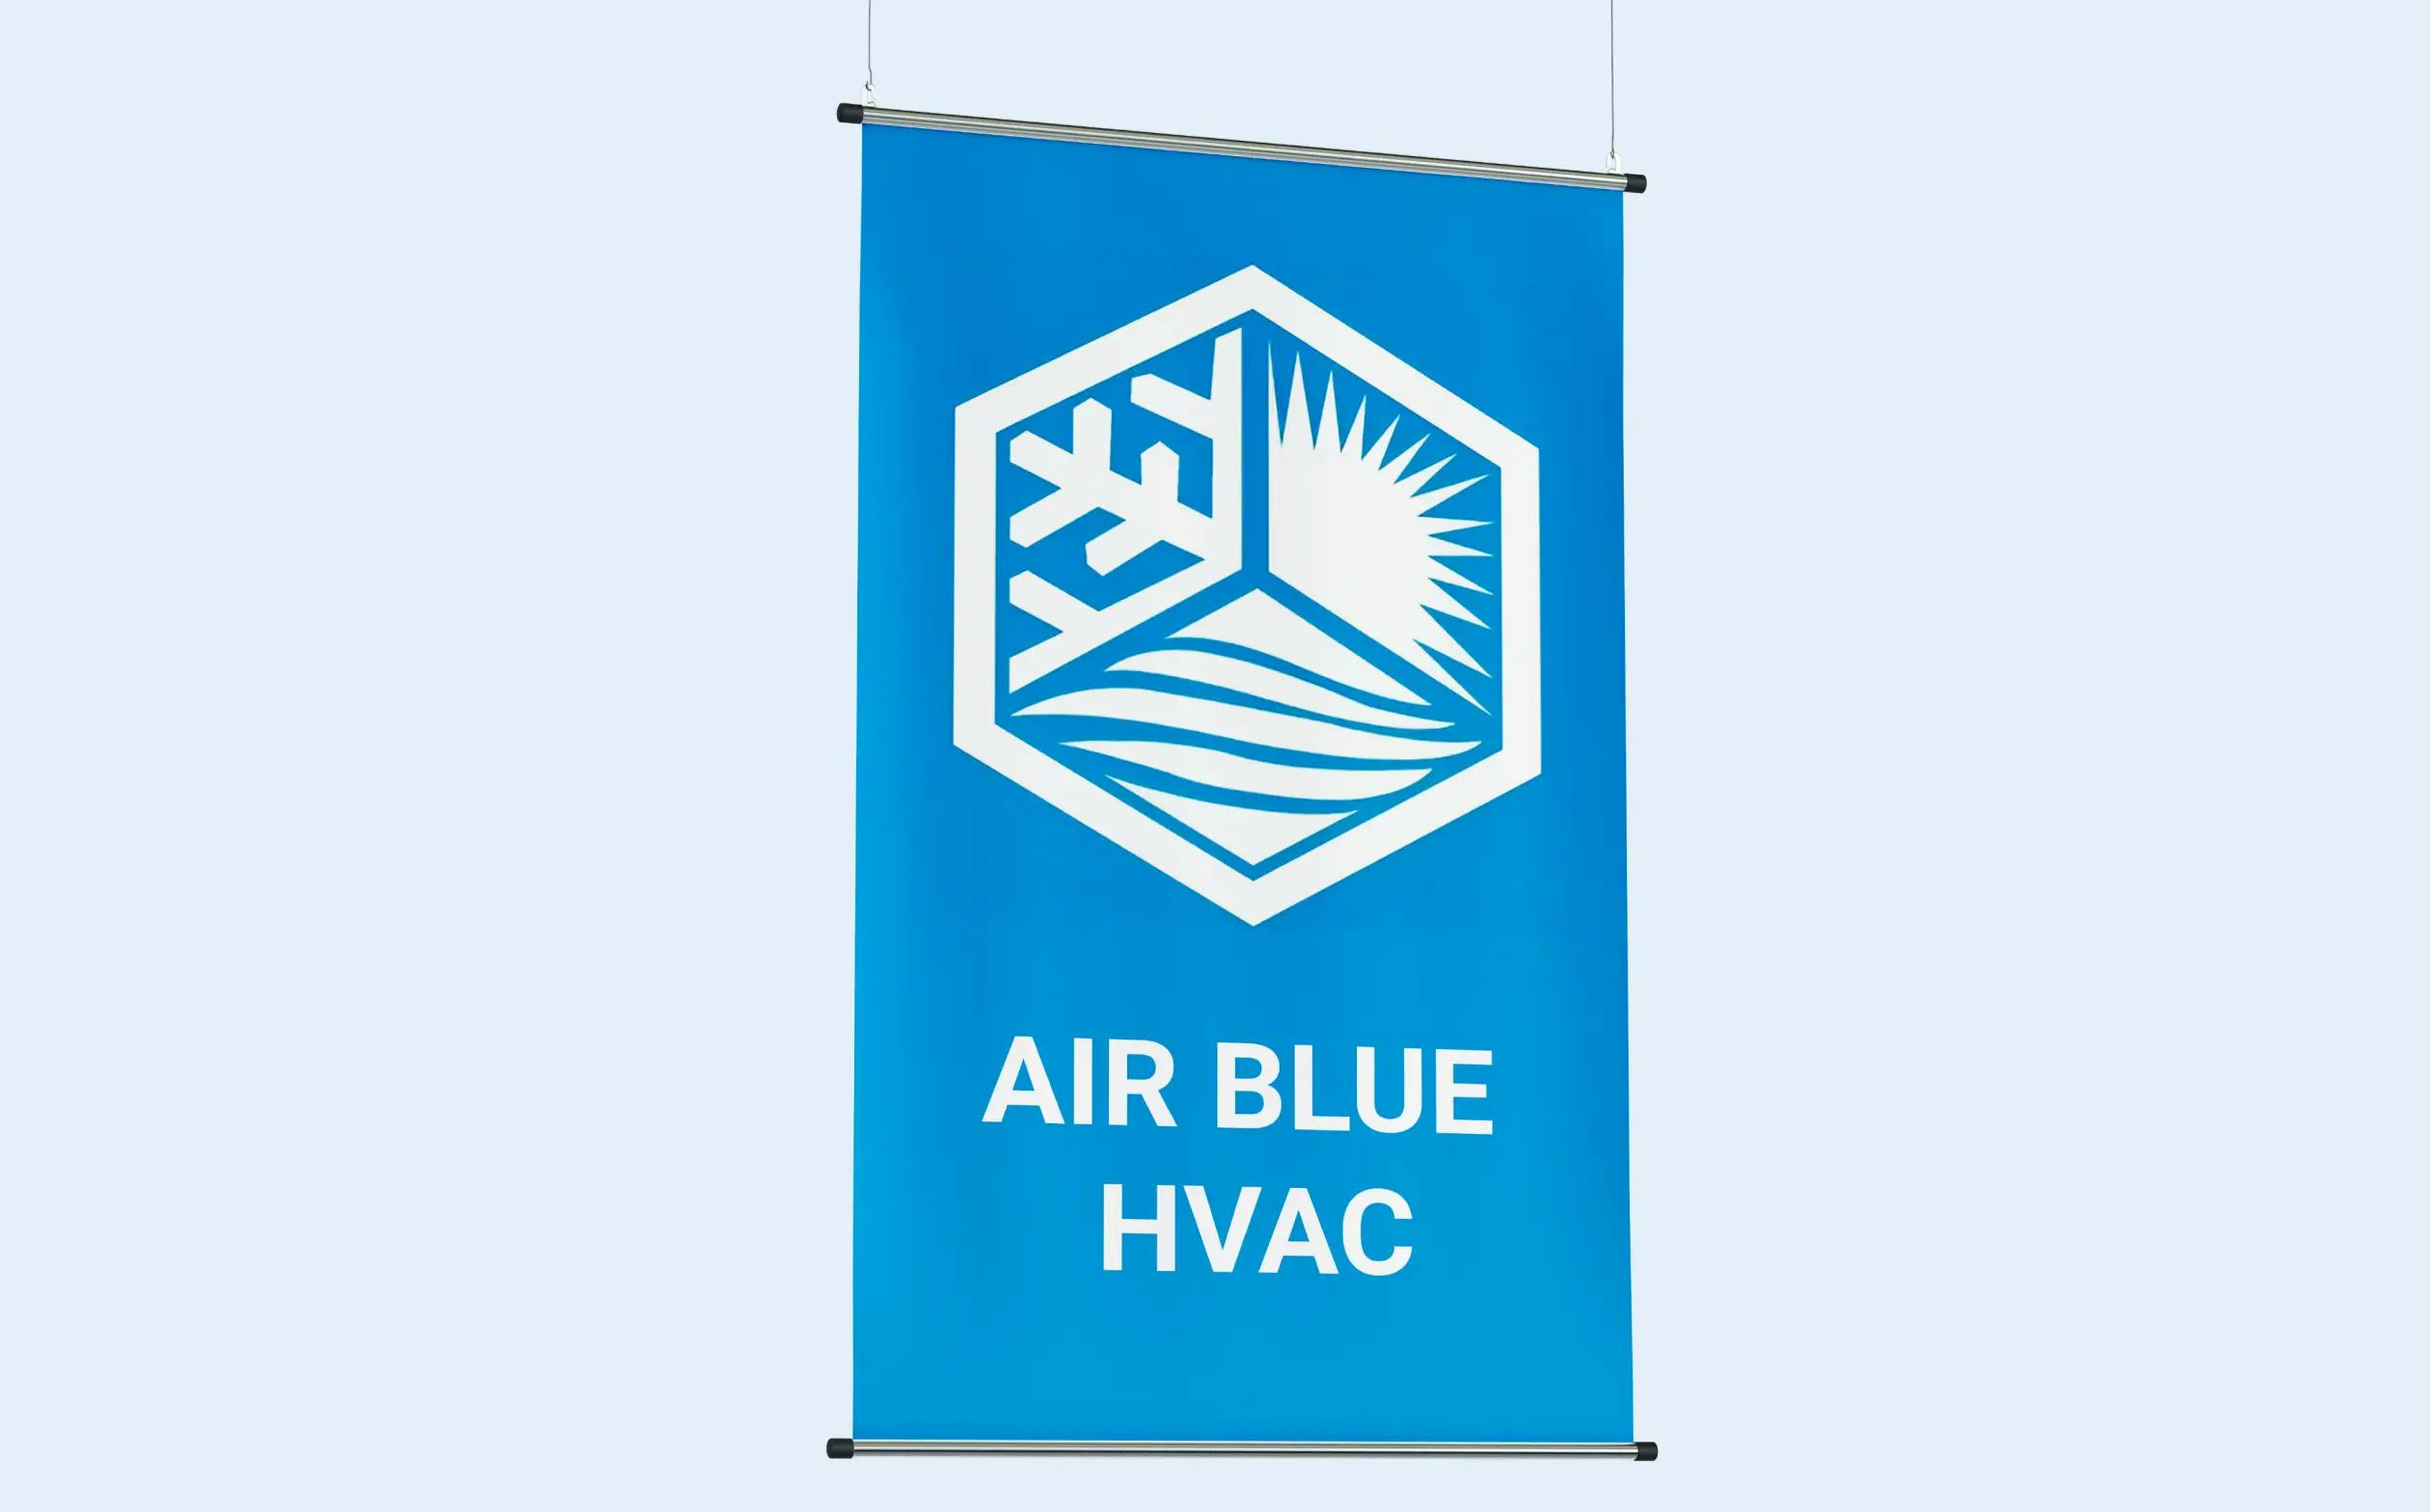 Сайт компании HVAC